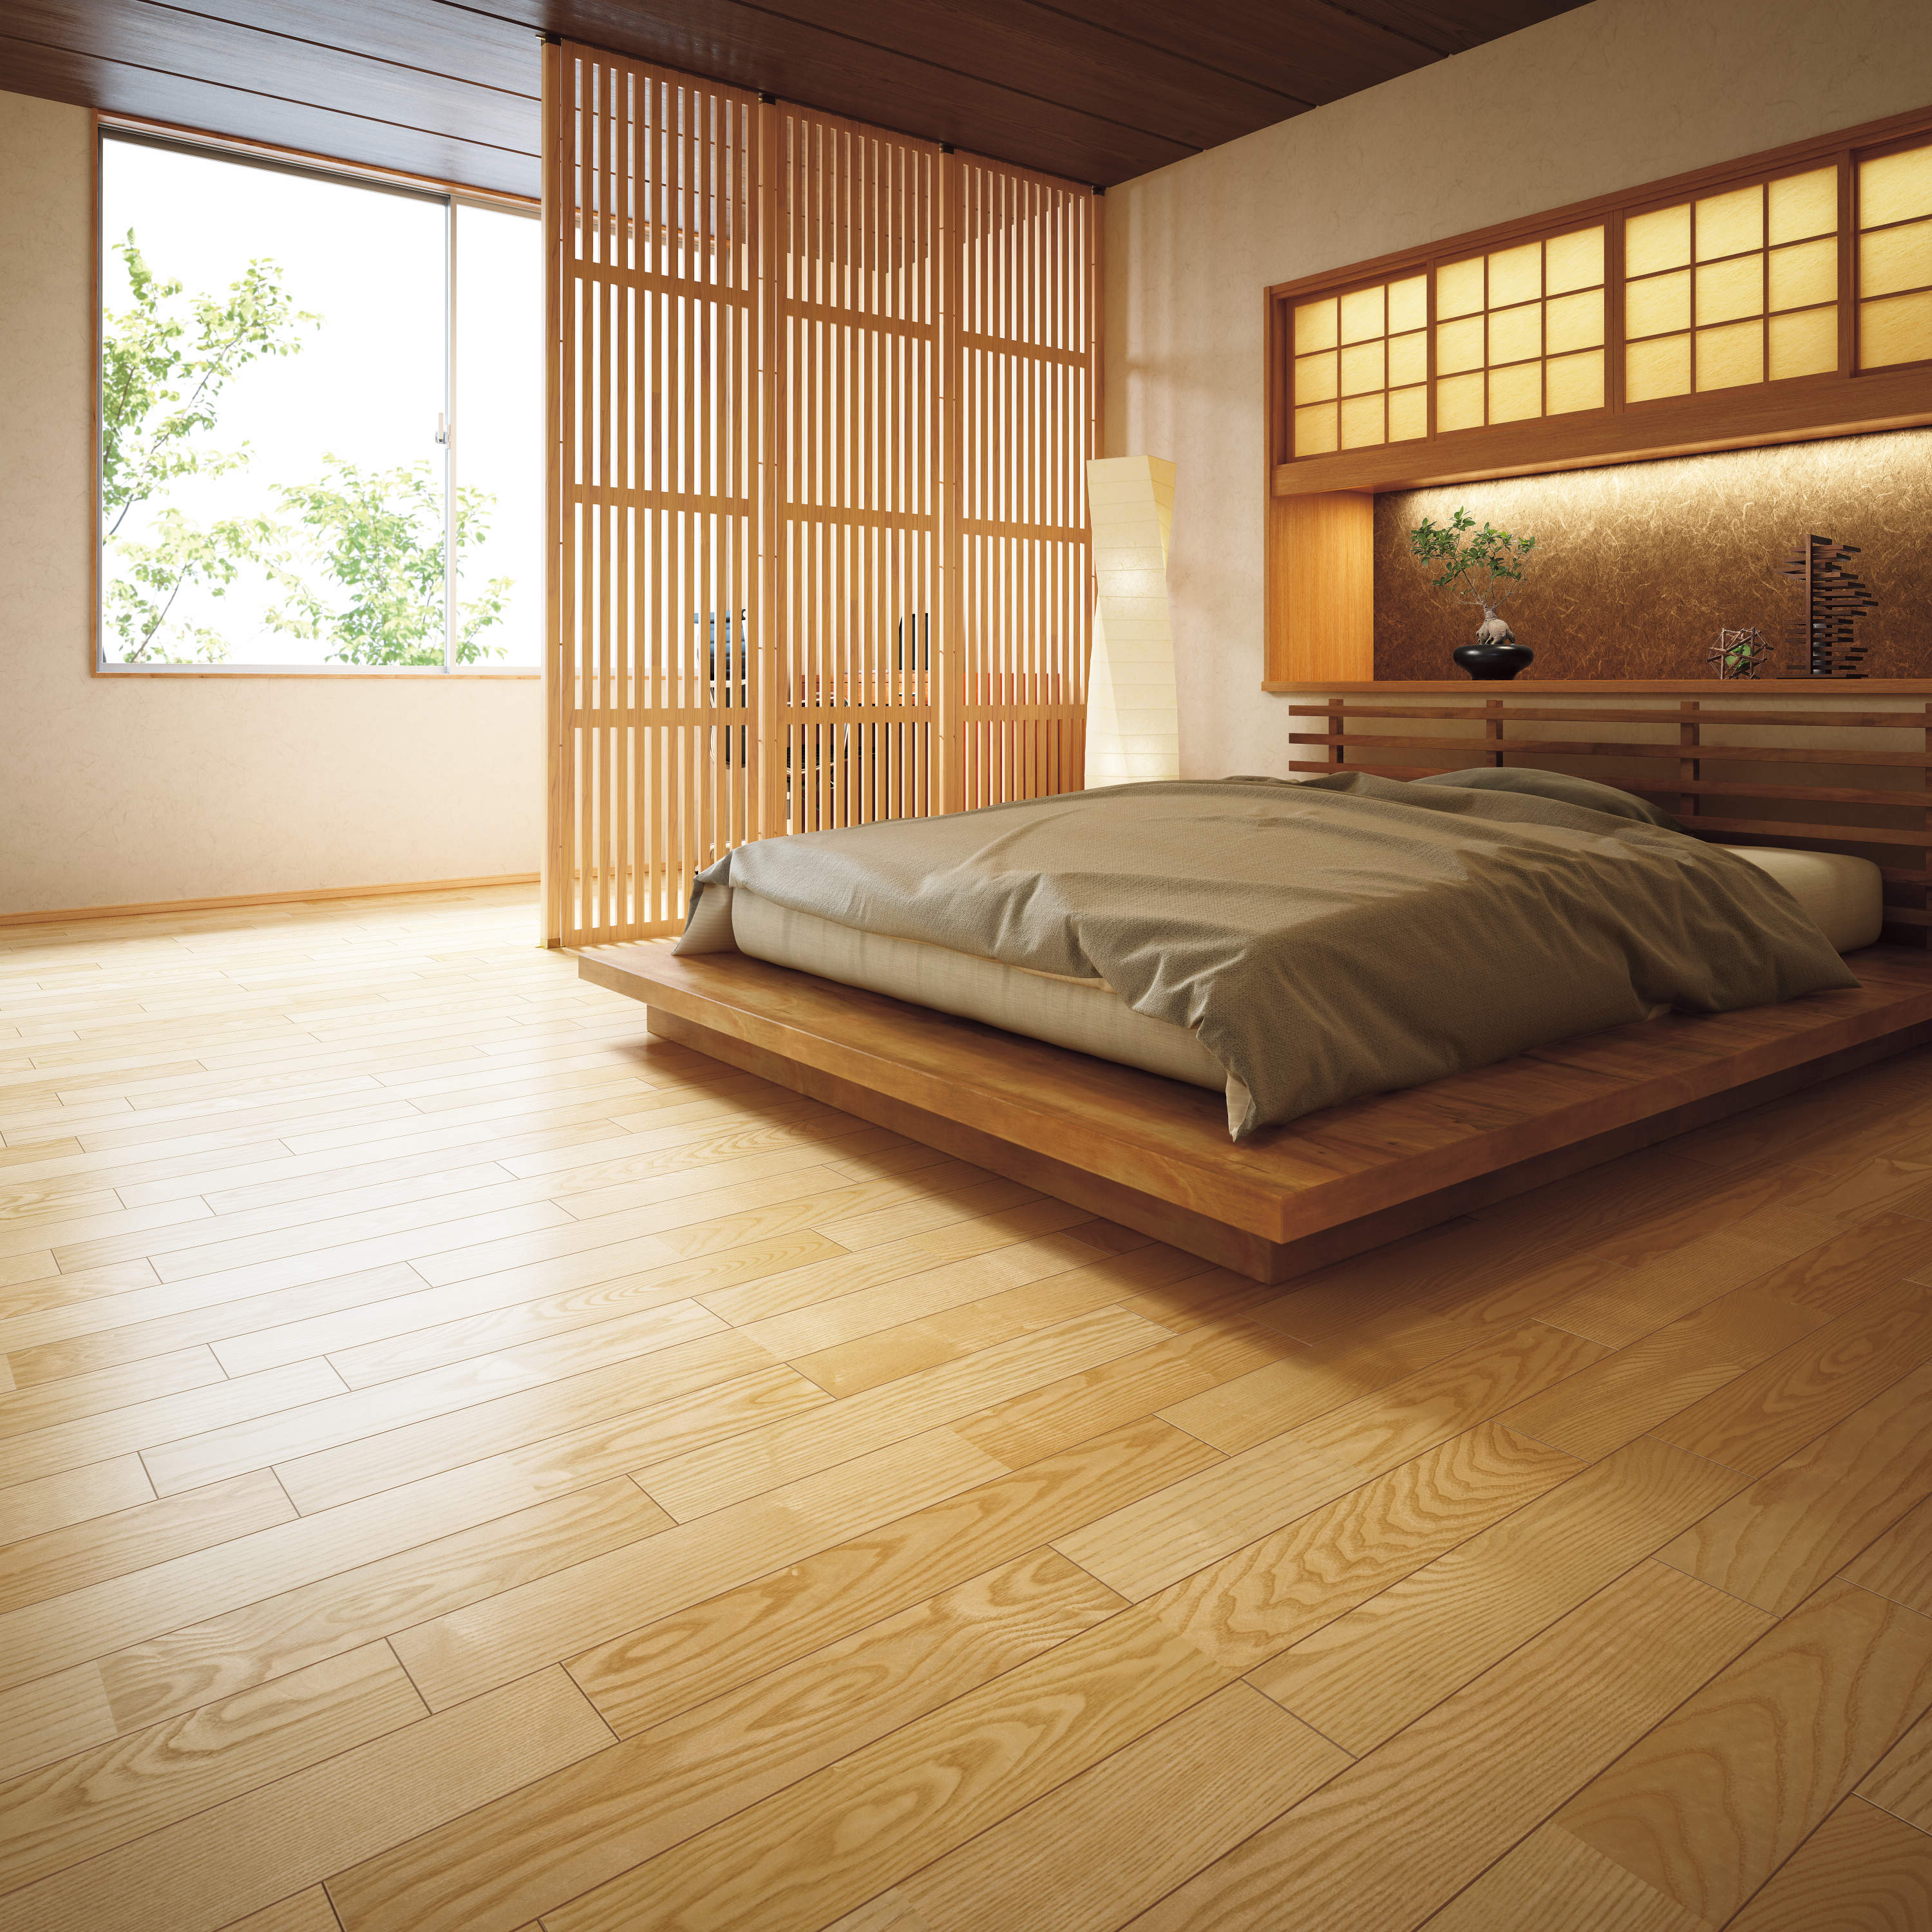 Sàn gỗ kỹ thuật – Gỗ sồi đỏ 1P, bản rộng 90mm (MRBS-ROA-C)